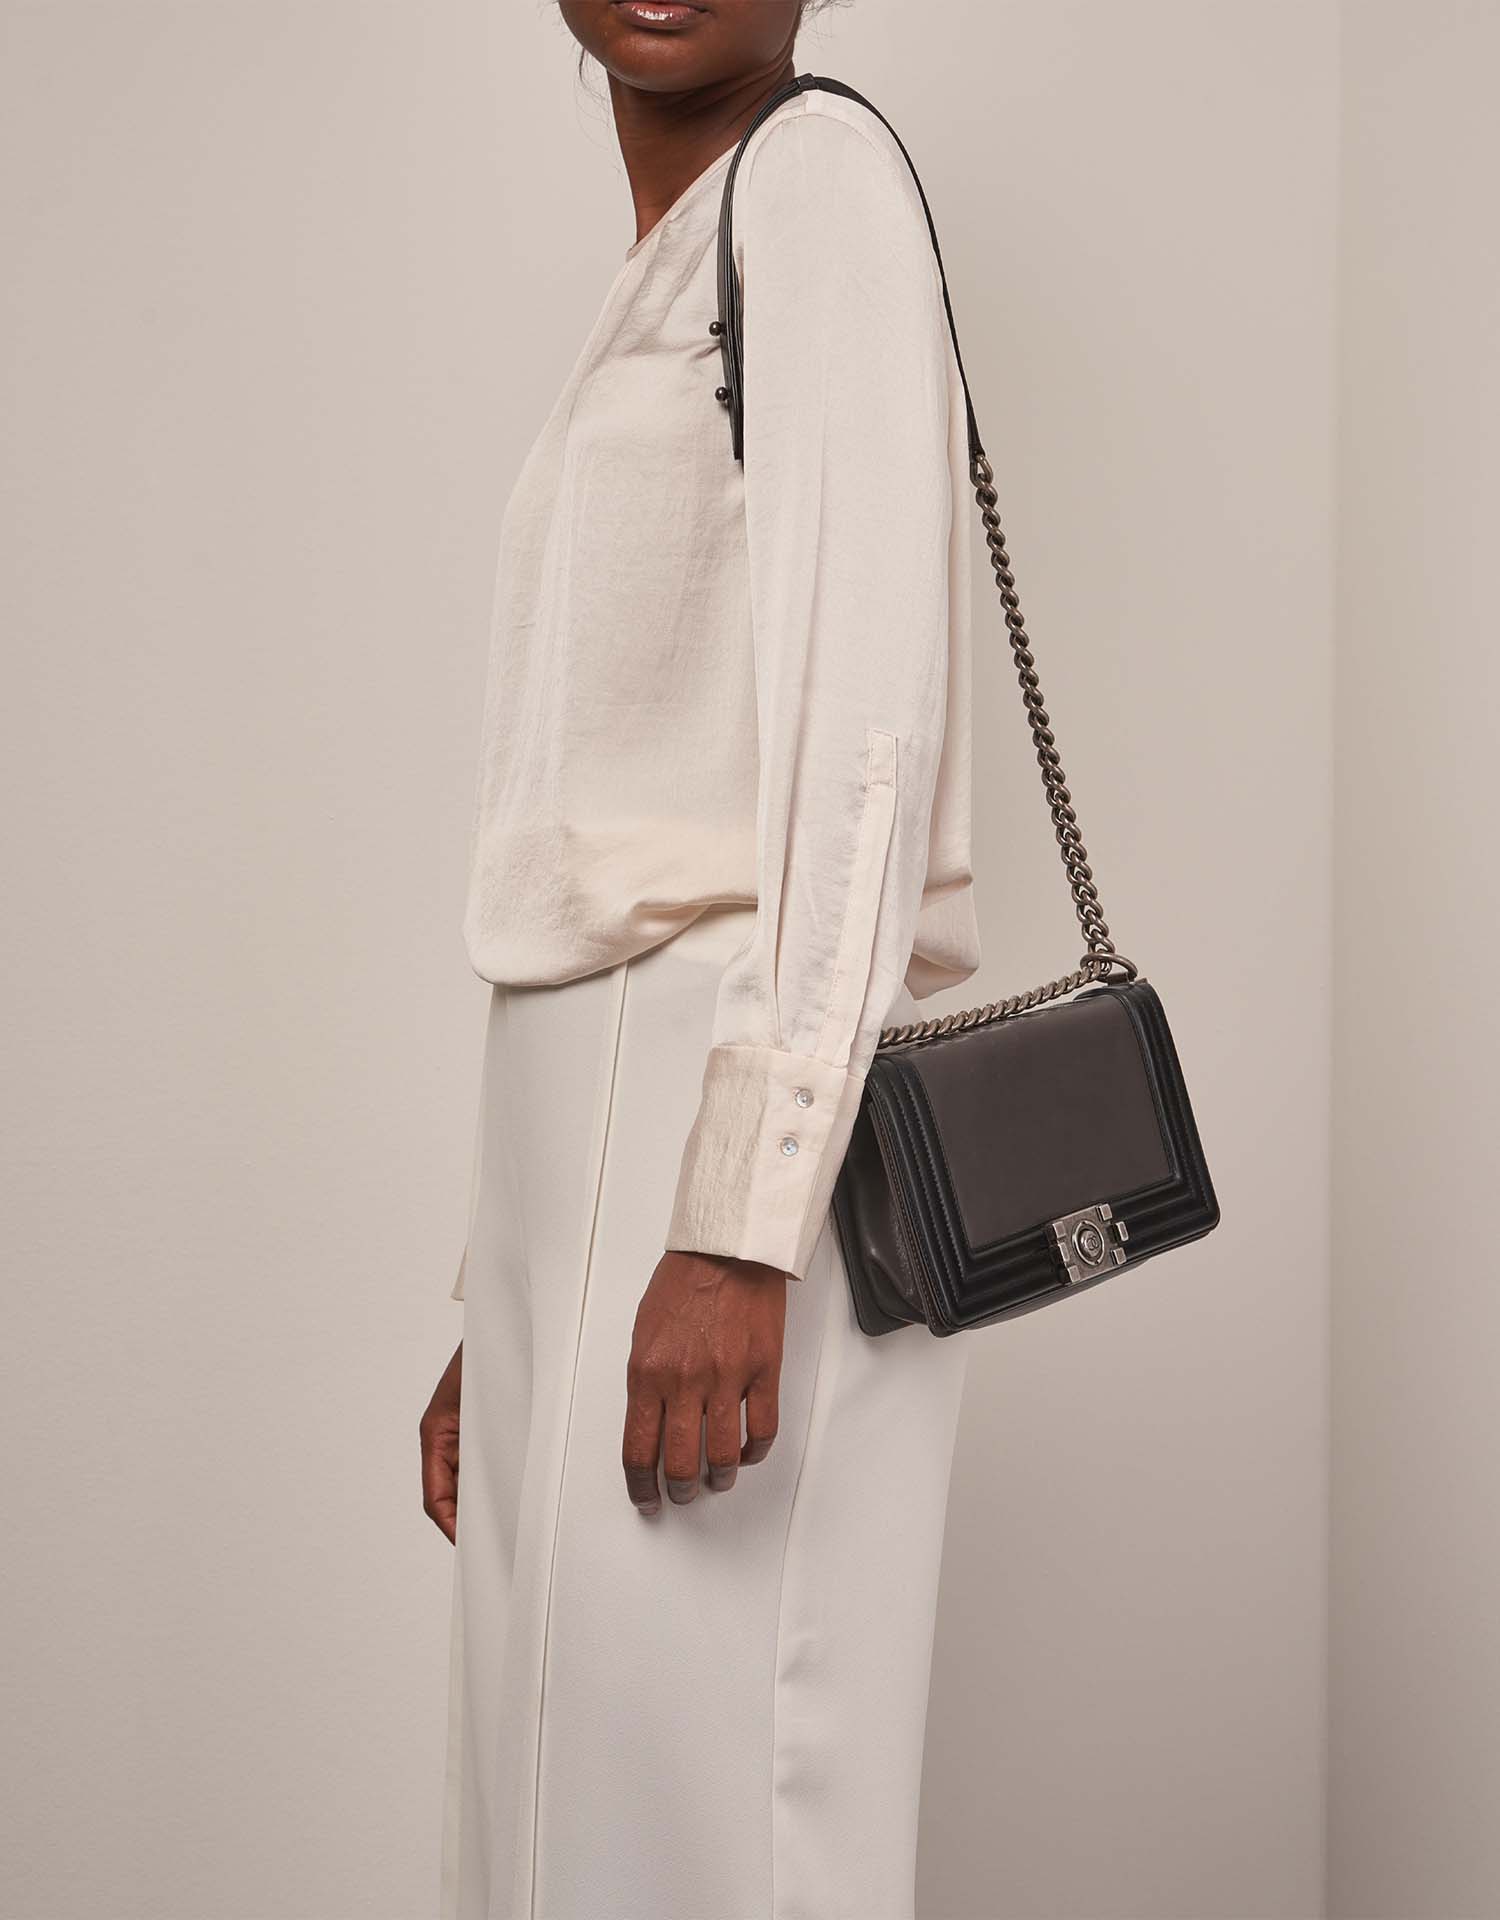 Chanel Boy OldMedium Black-Grey on Model | Sell your designer bag on Saclab.com